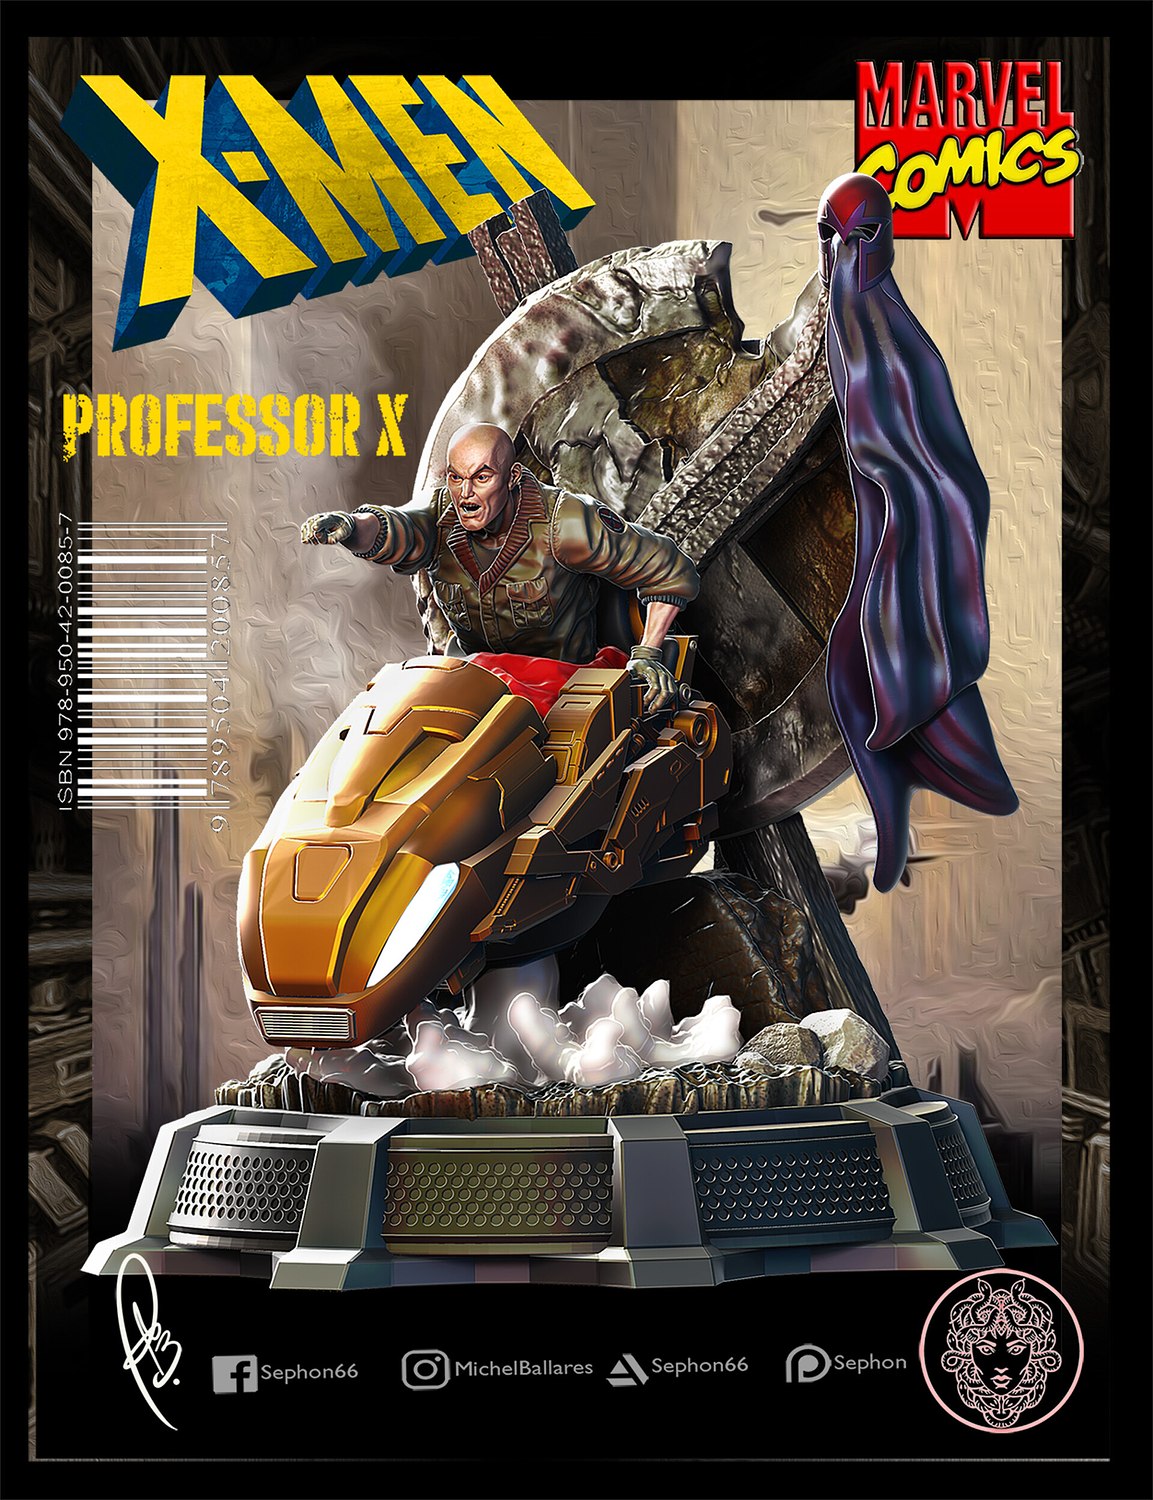 Professor X from X-men